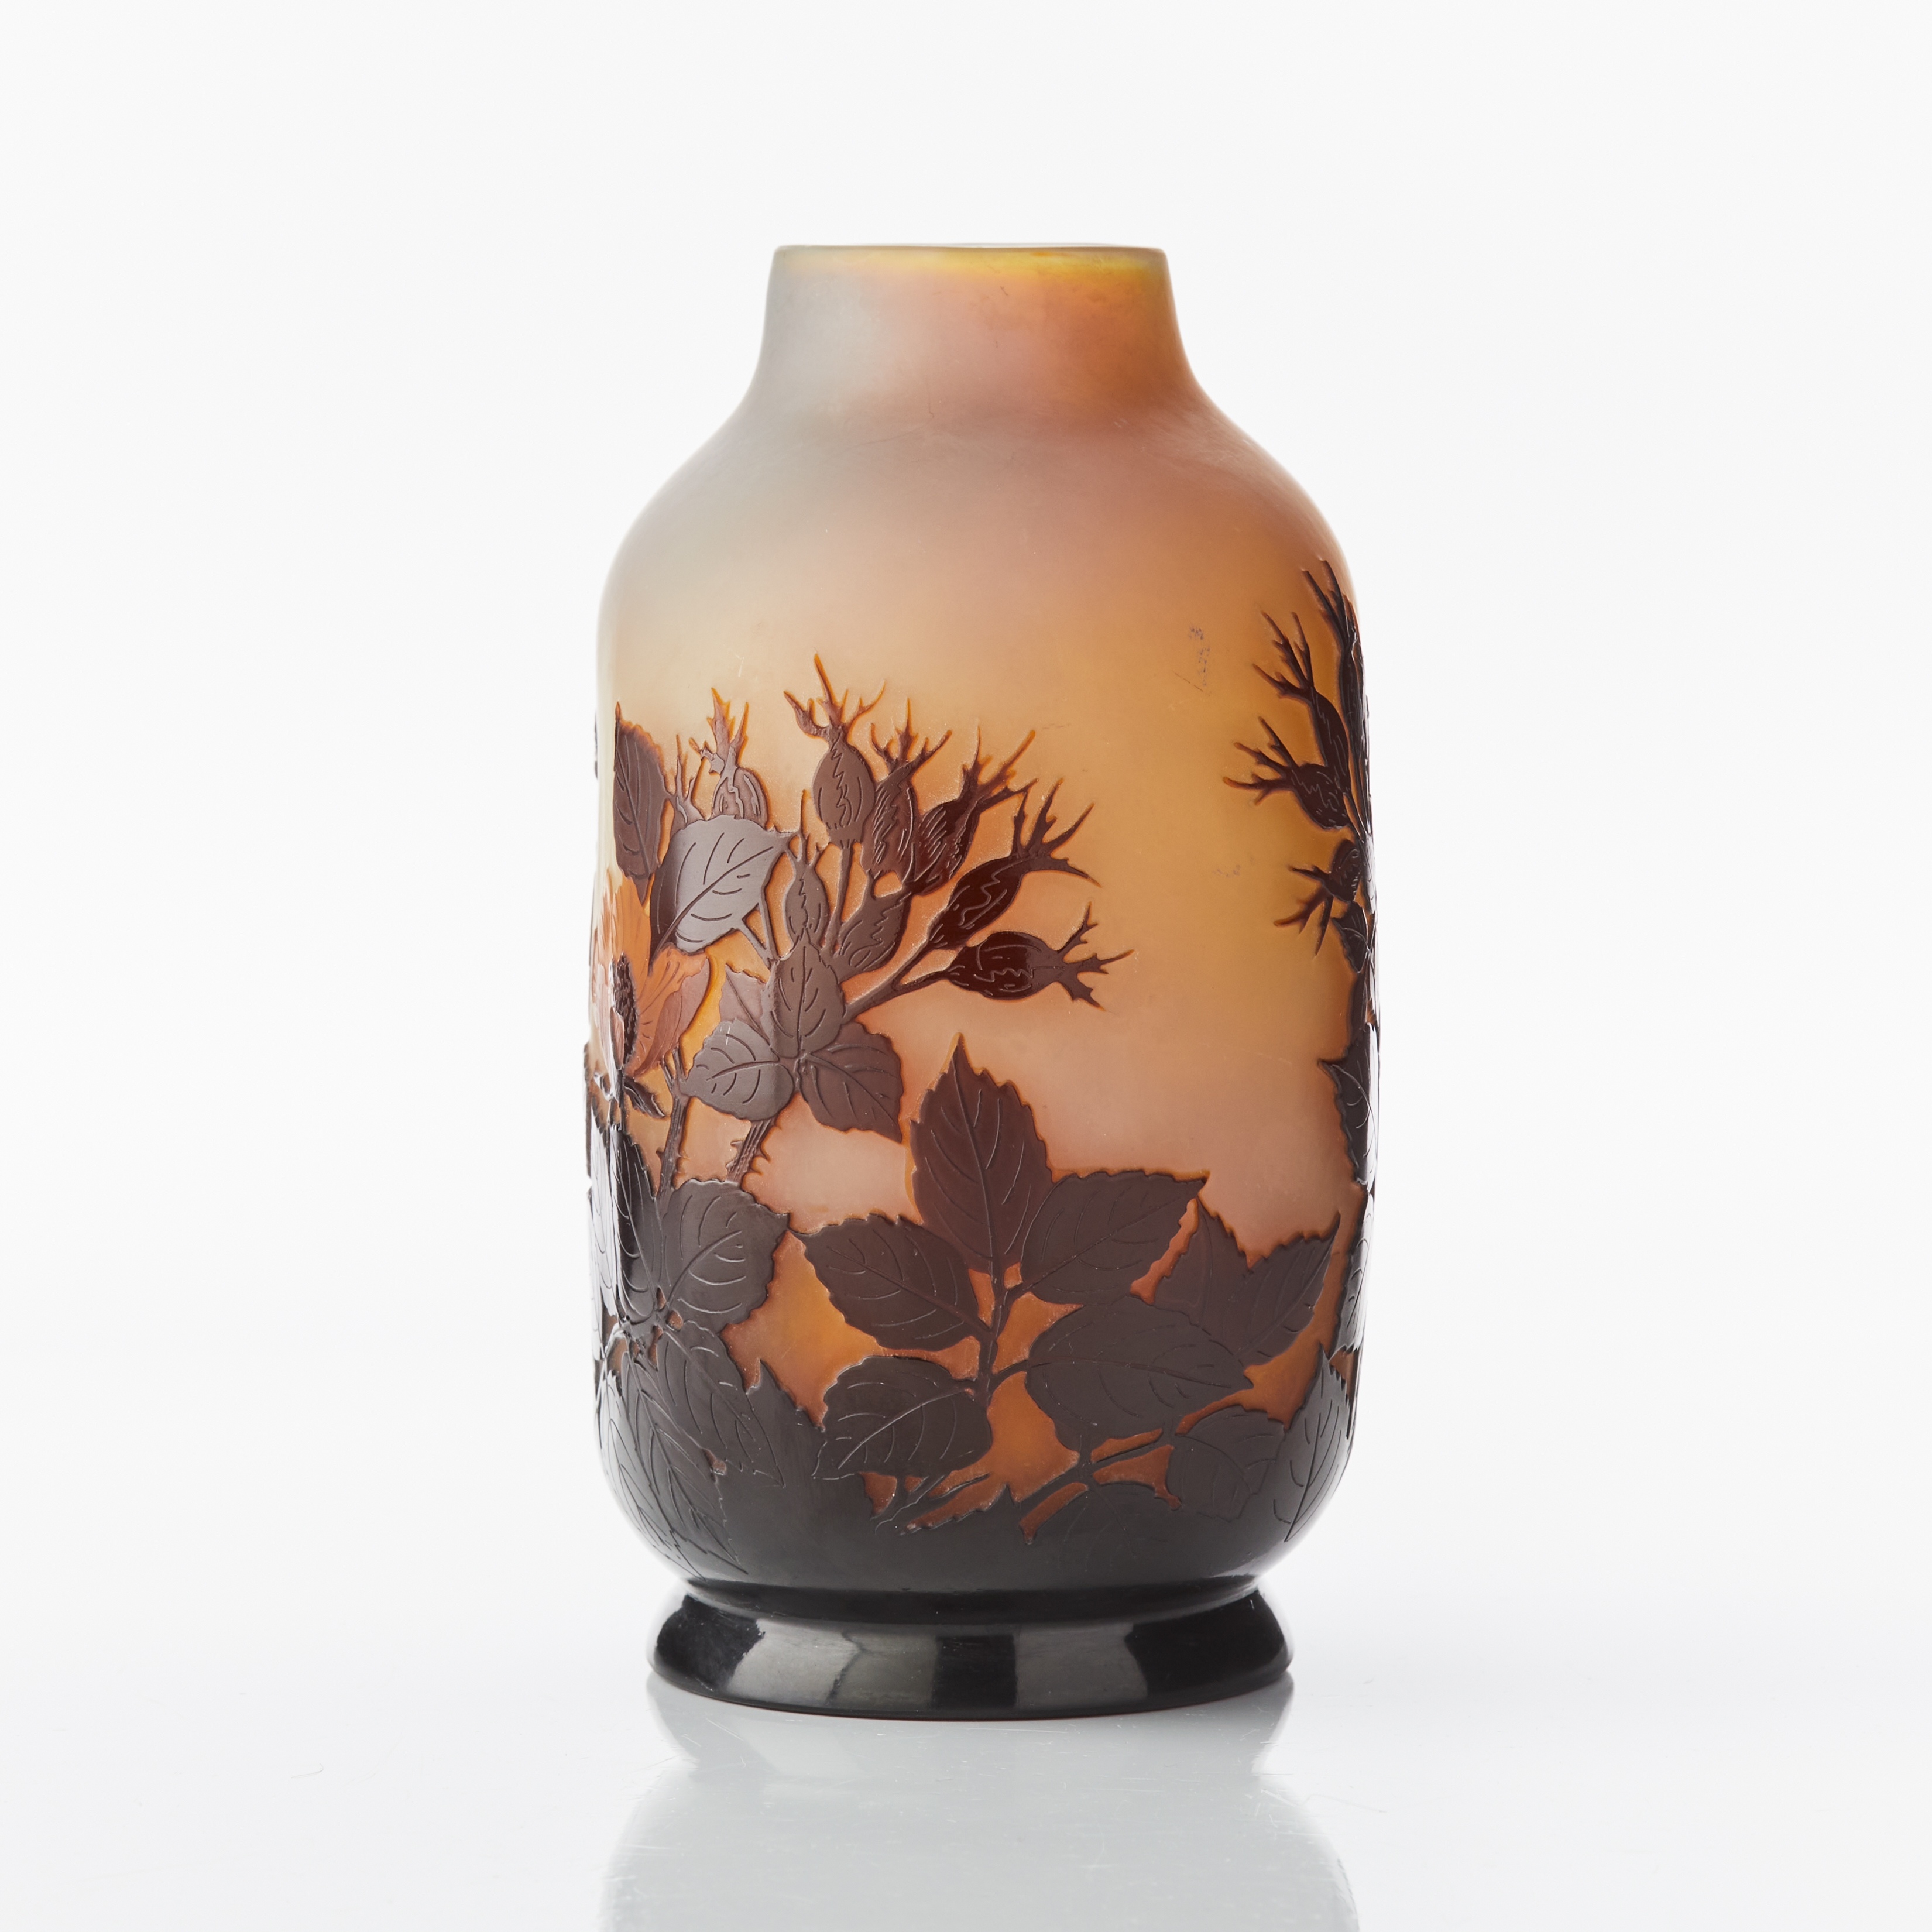 Artwork by Emile Gallé, Vas, Made of cameo glass